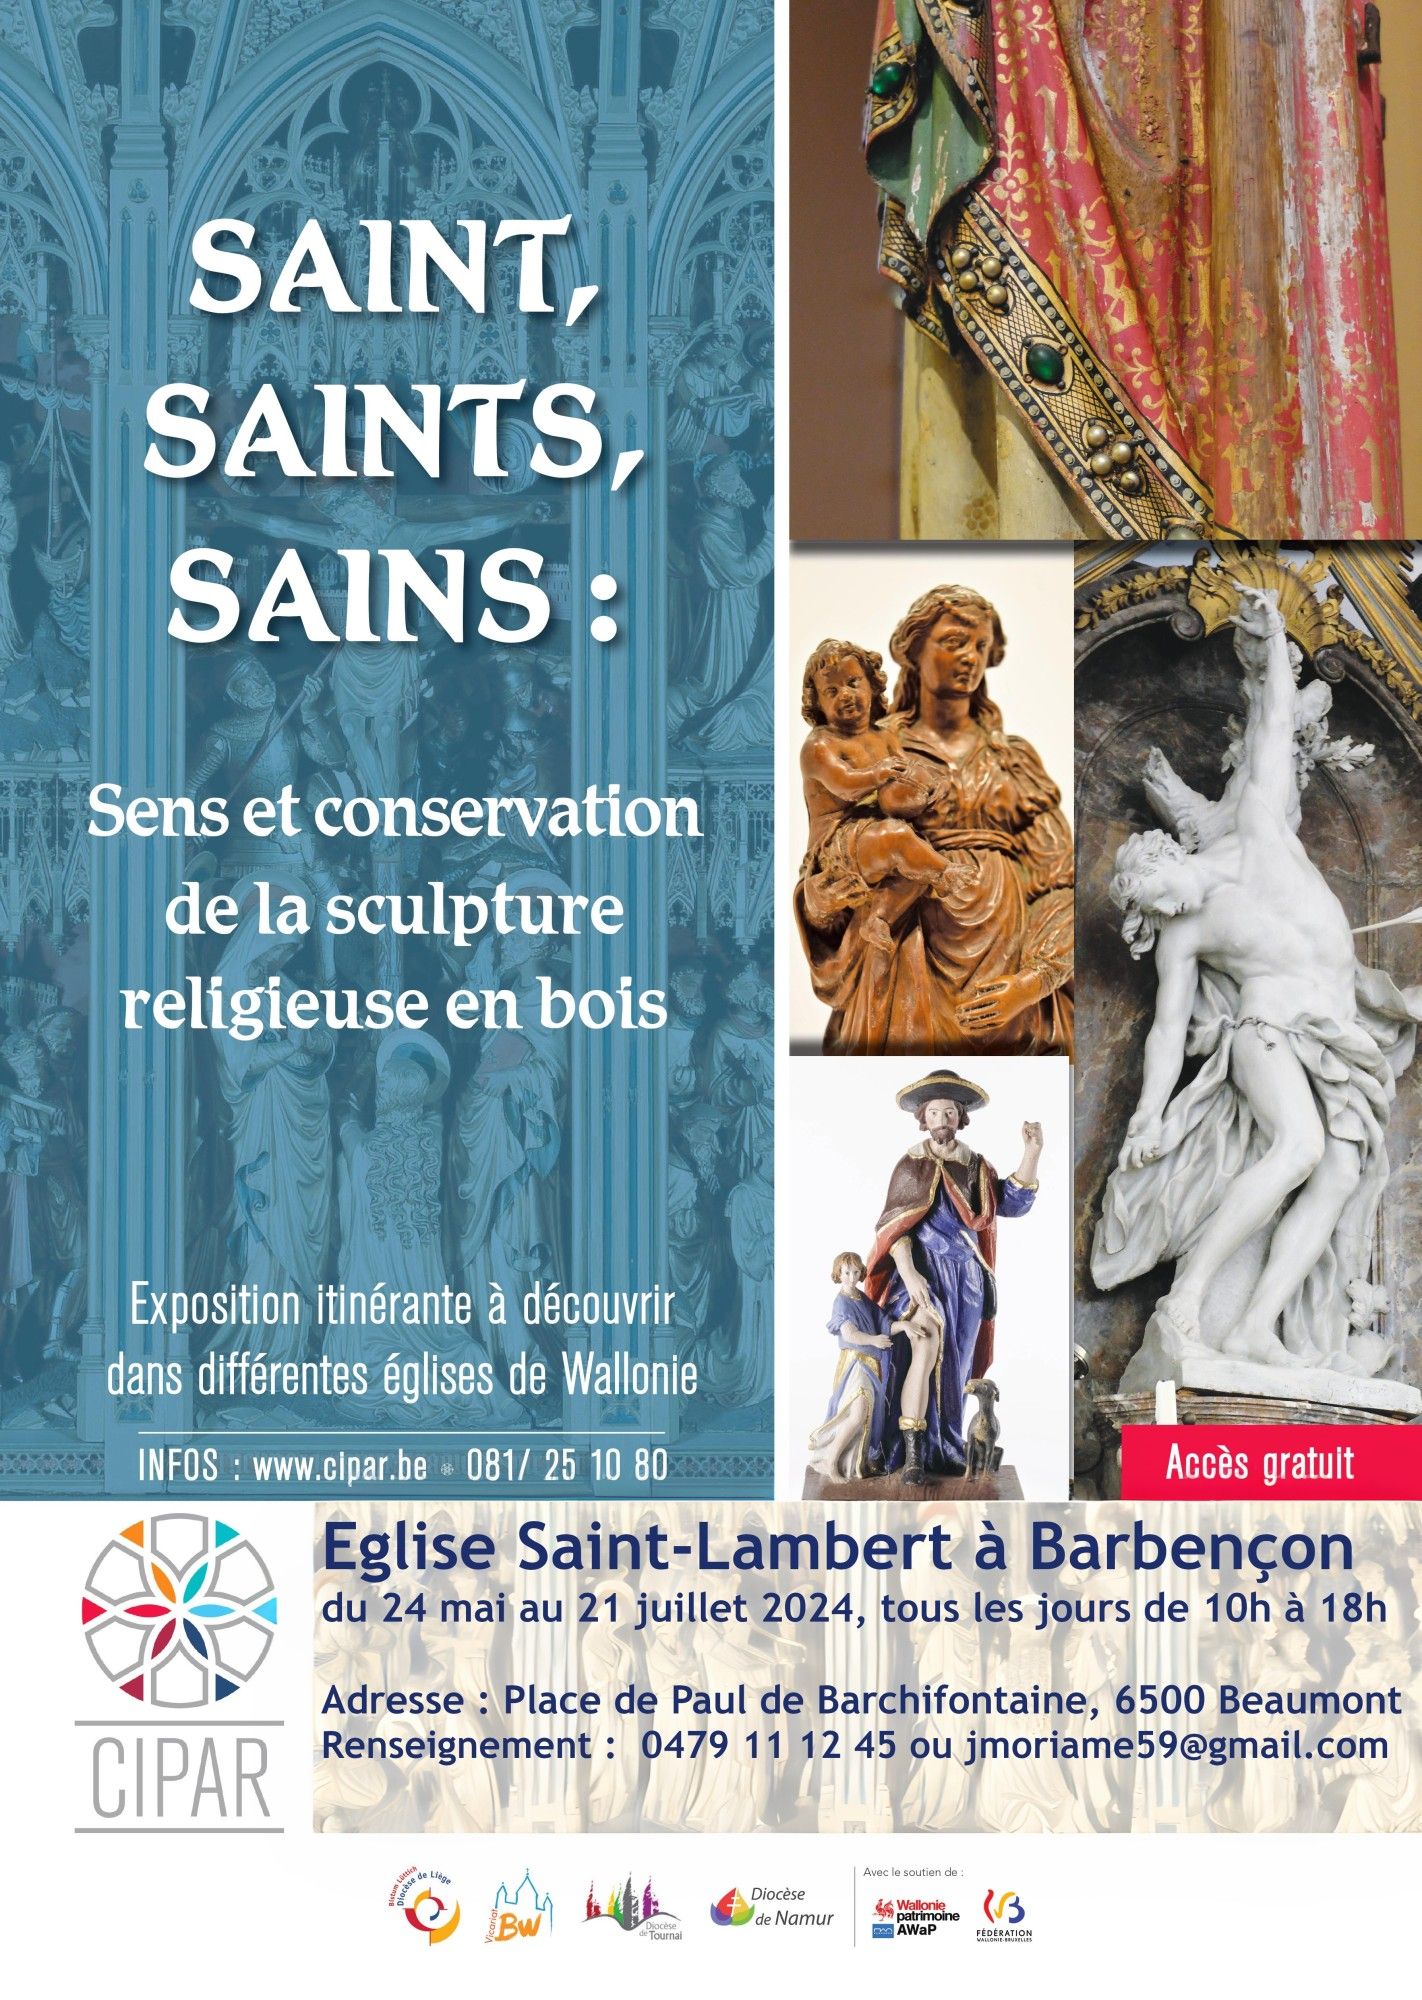 Saint, Saints, Sains - Sens et conservation de la sculpture religieuse en bois